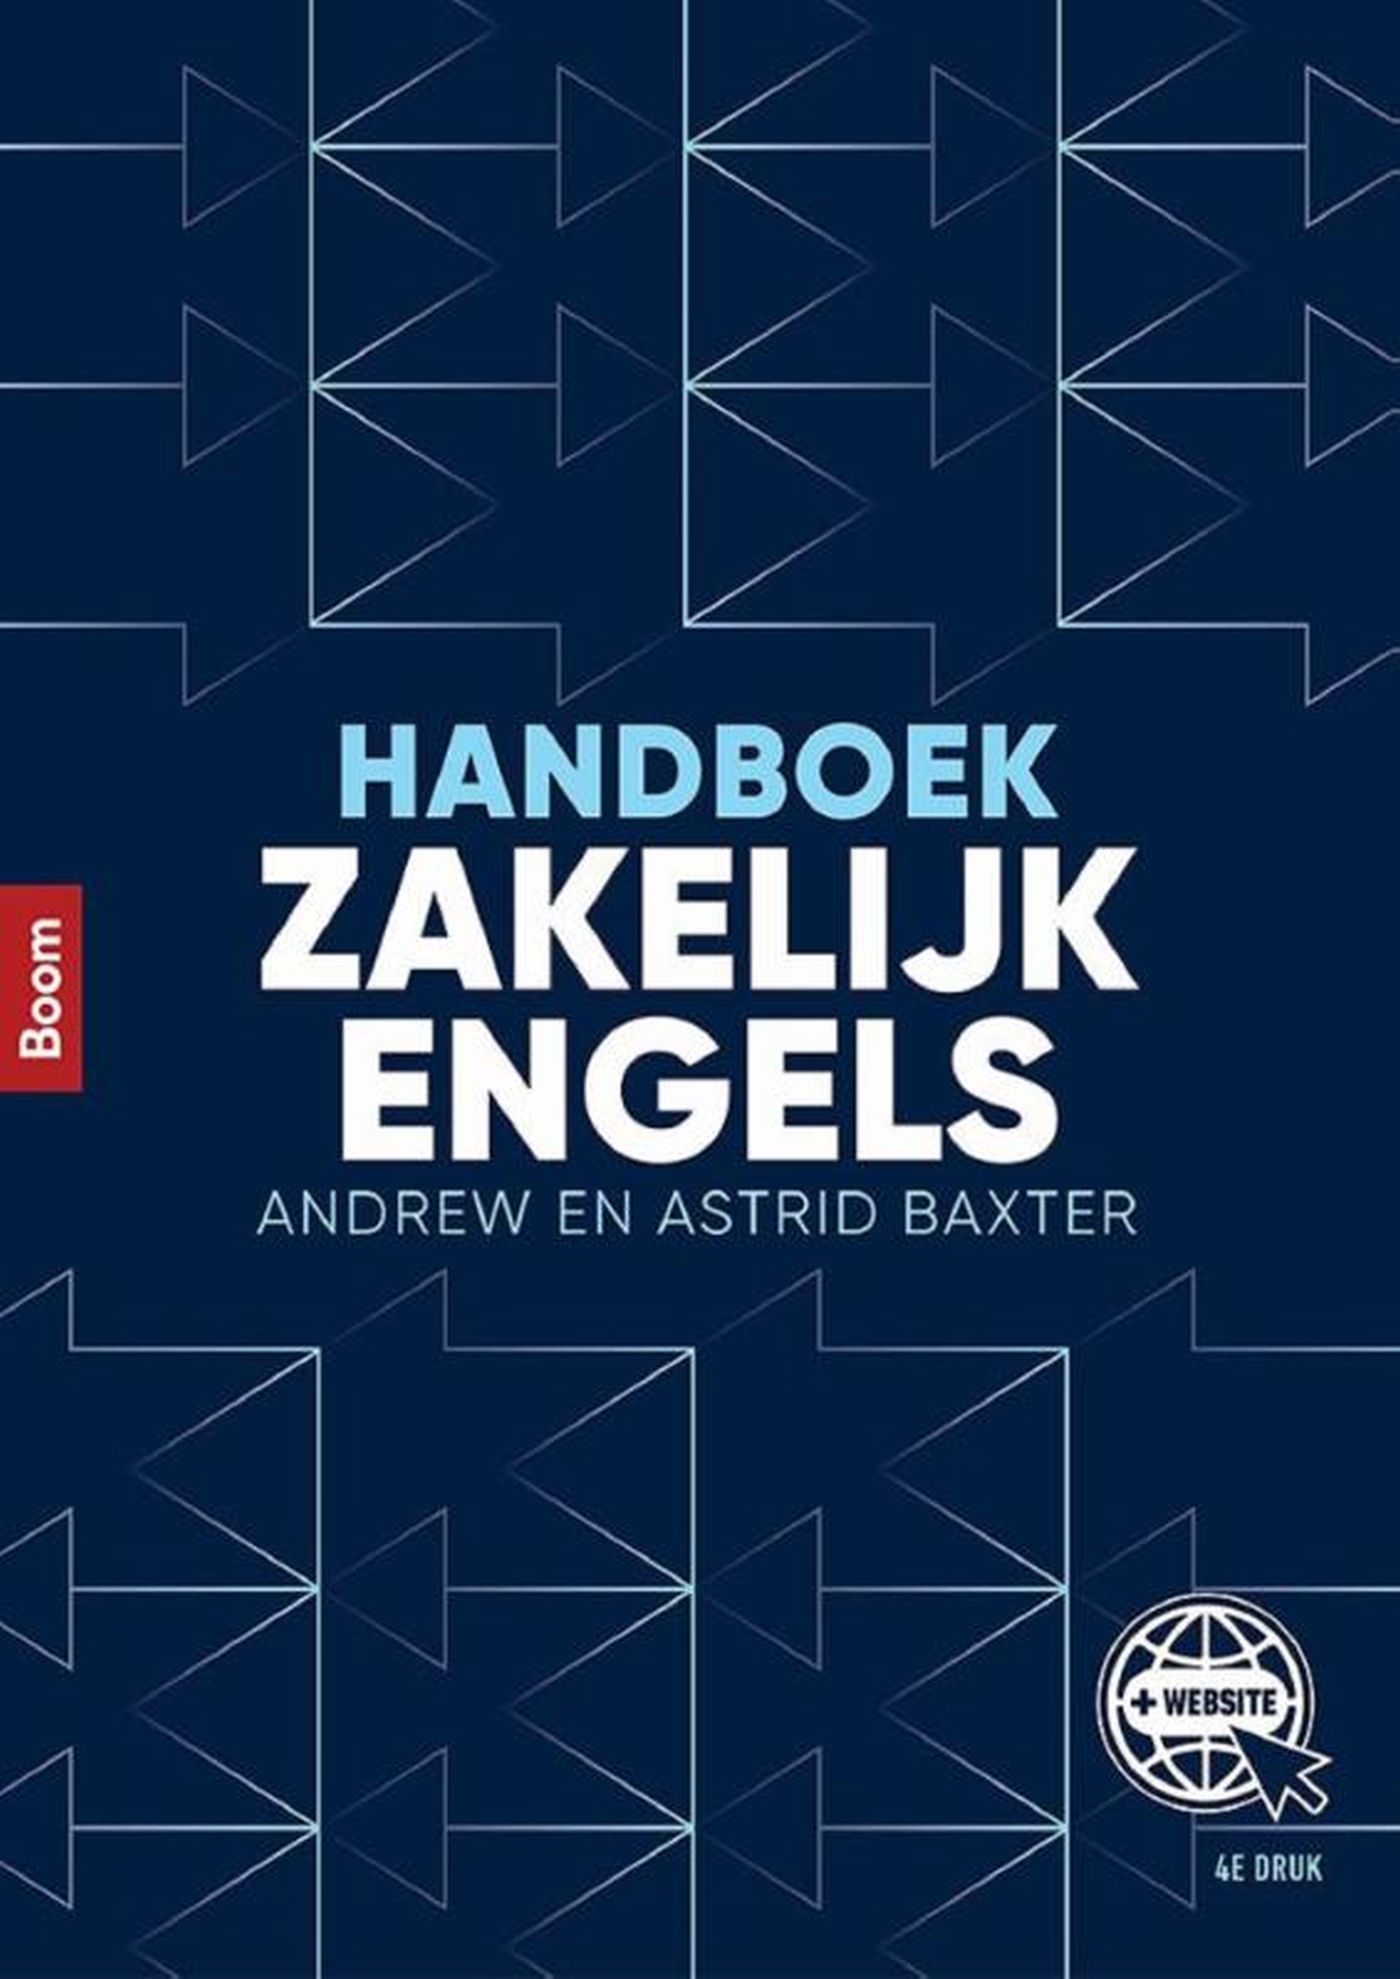 Handboek zakelijk Engels (Ebook)